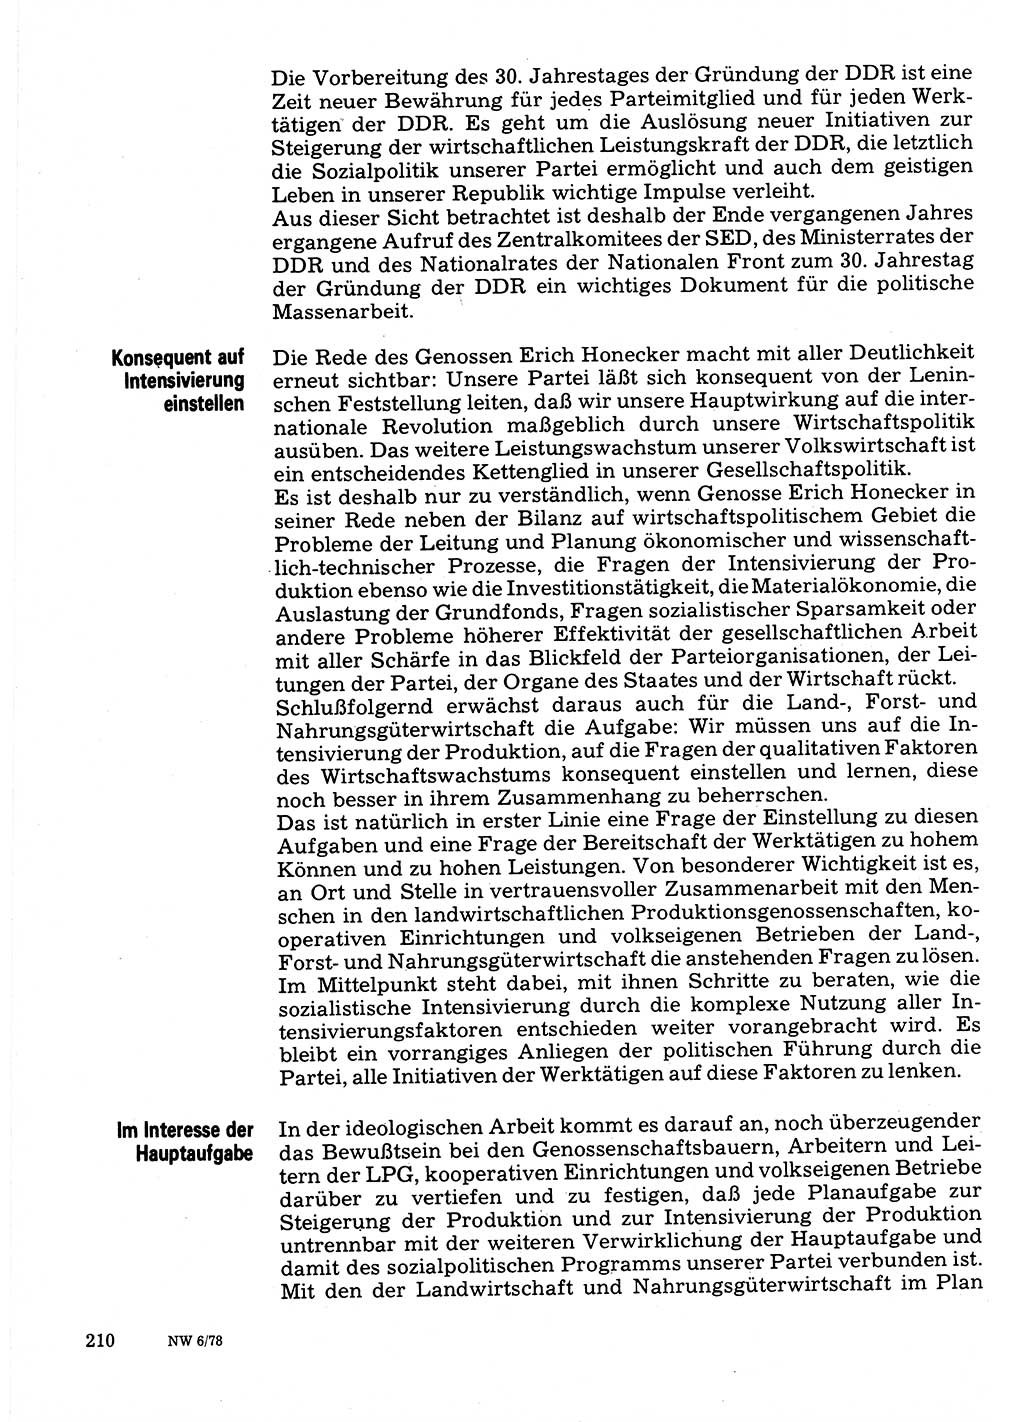 Neuer Weg (NW), Organ des Zentralkomitees (ZK) der SED (Sozialistische Einheitspartei Deutschlands) für Fragen des Parteilebens, 33. Jahrgang [Deutsche Demokratische Republik (DDR)] 1978, Seite 210 (NW ZK SED DDR 1978, S. 210)